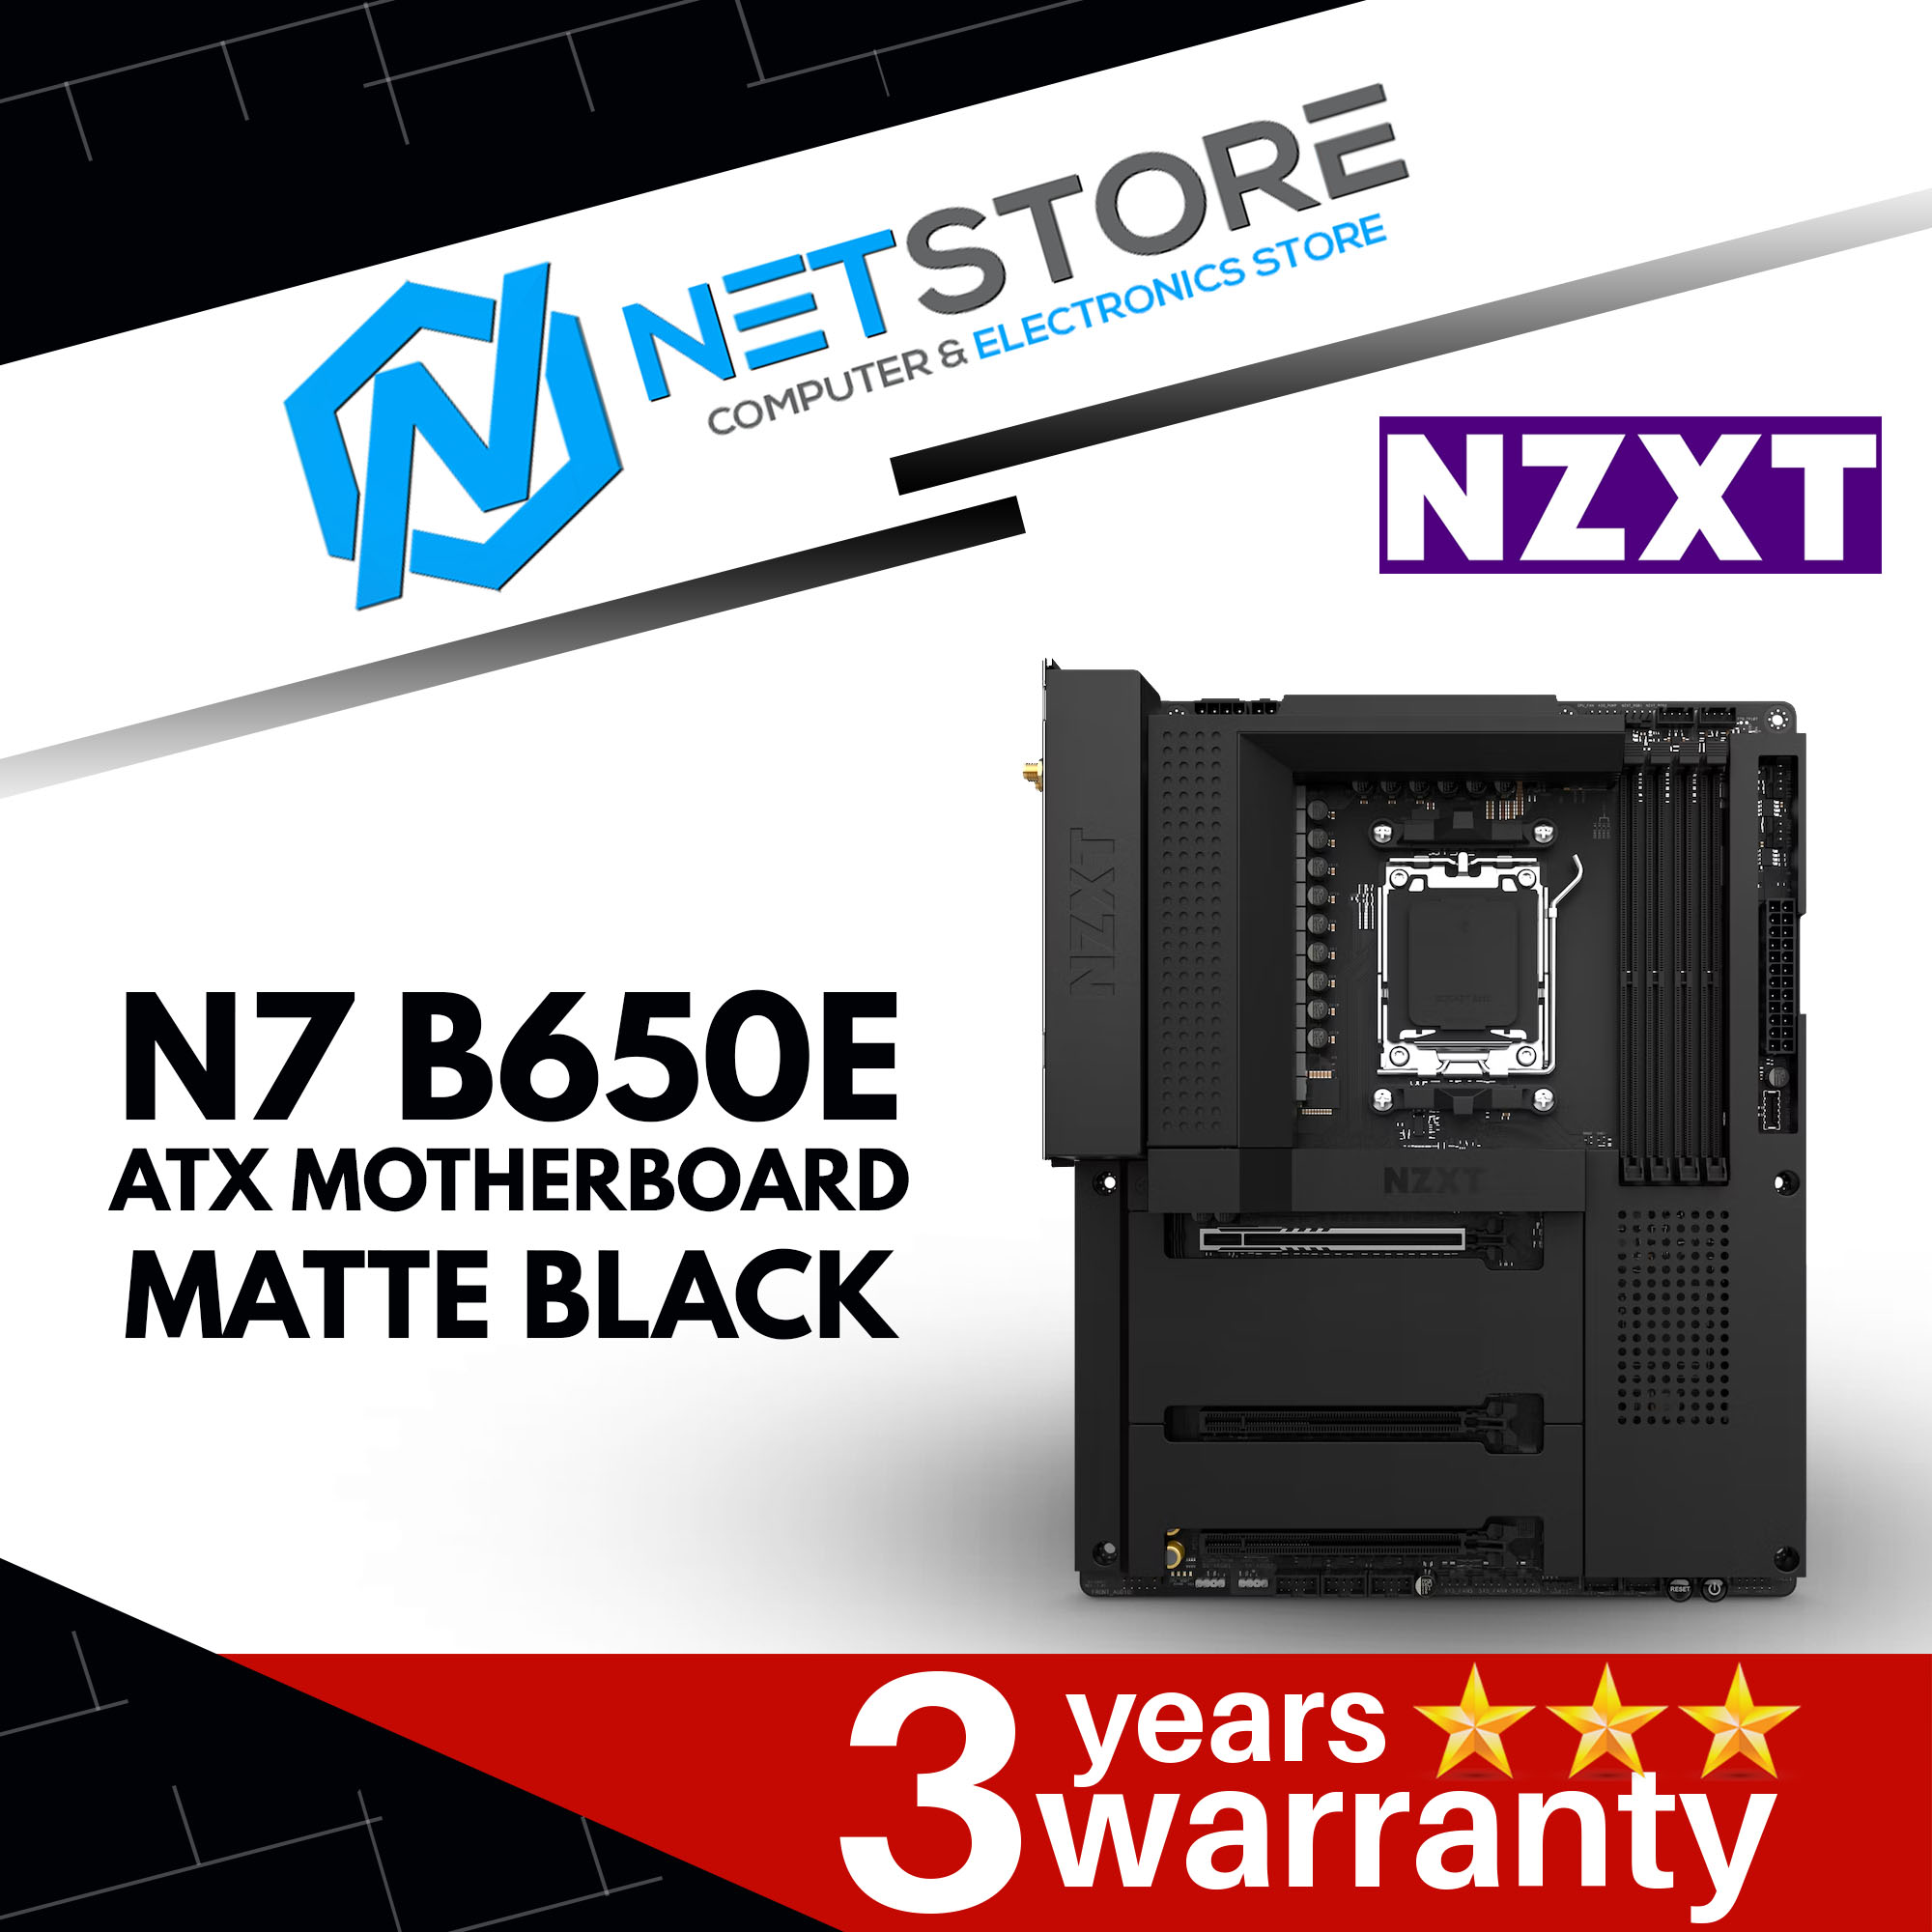 NZXT N7 B650E ATX MOTHERBOARD MATTE BLACK - N7-B65XT-B1